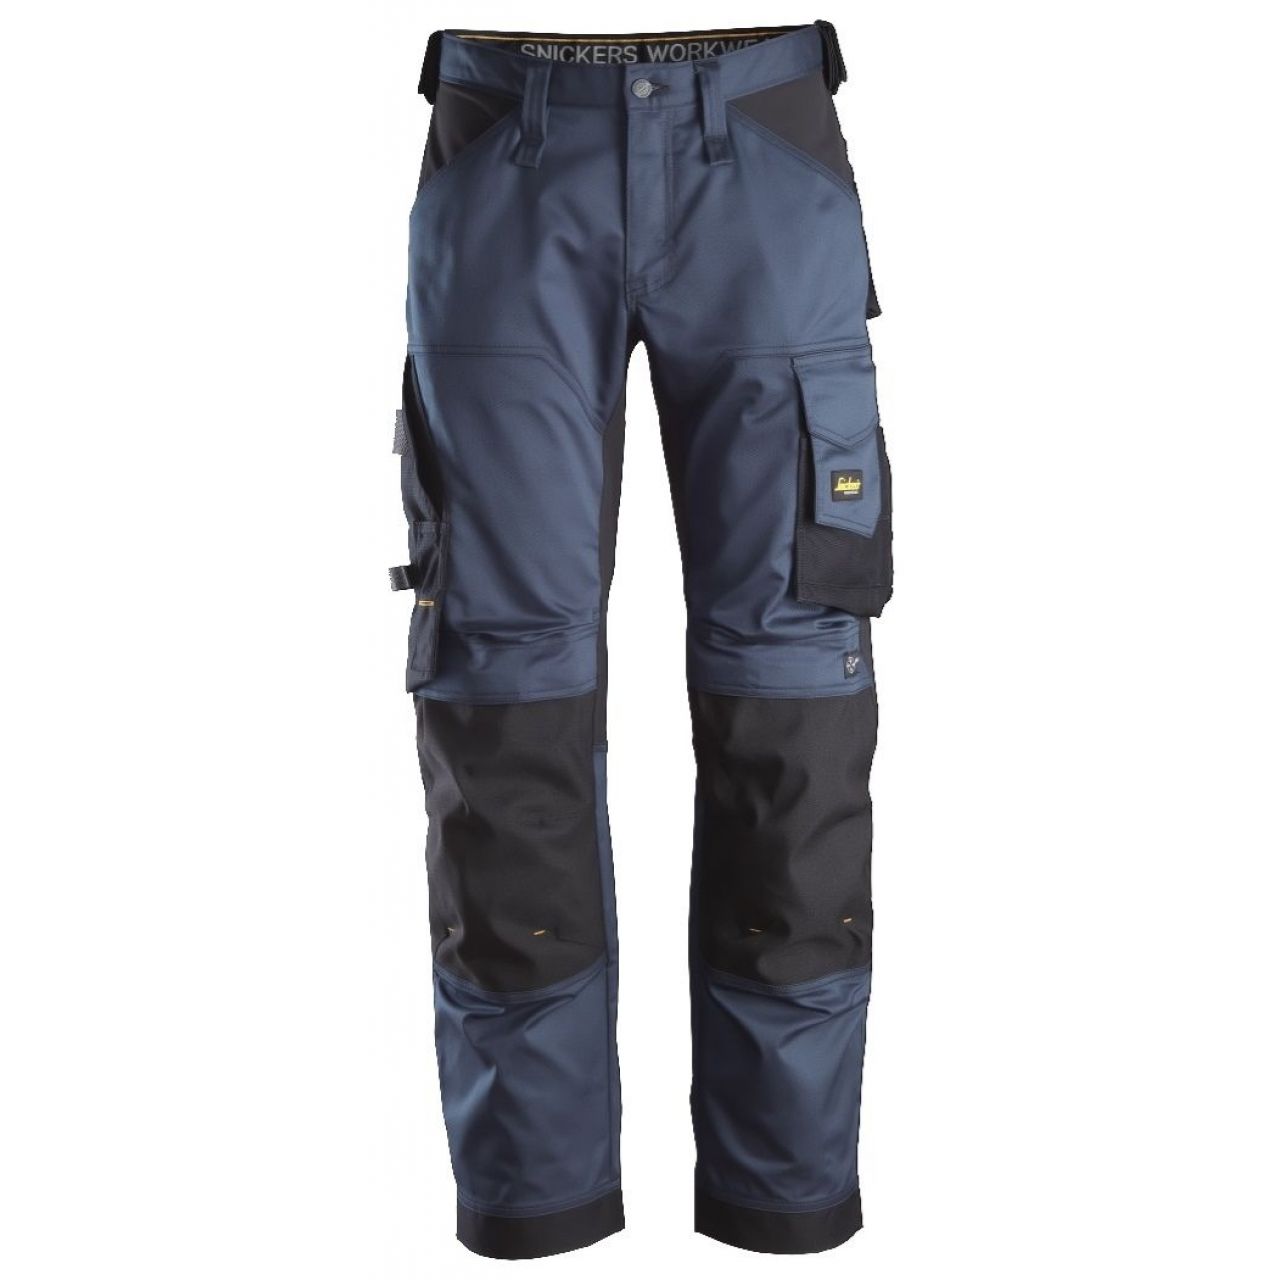 Pantalon elastico ajuste holgado AllroundWork azul marino-negro talla 148